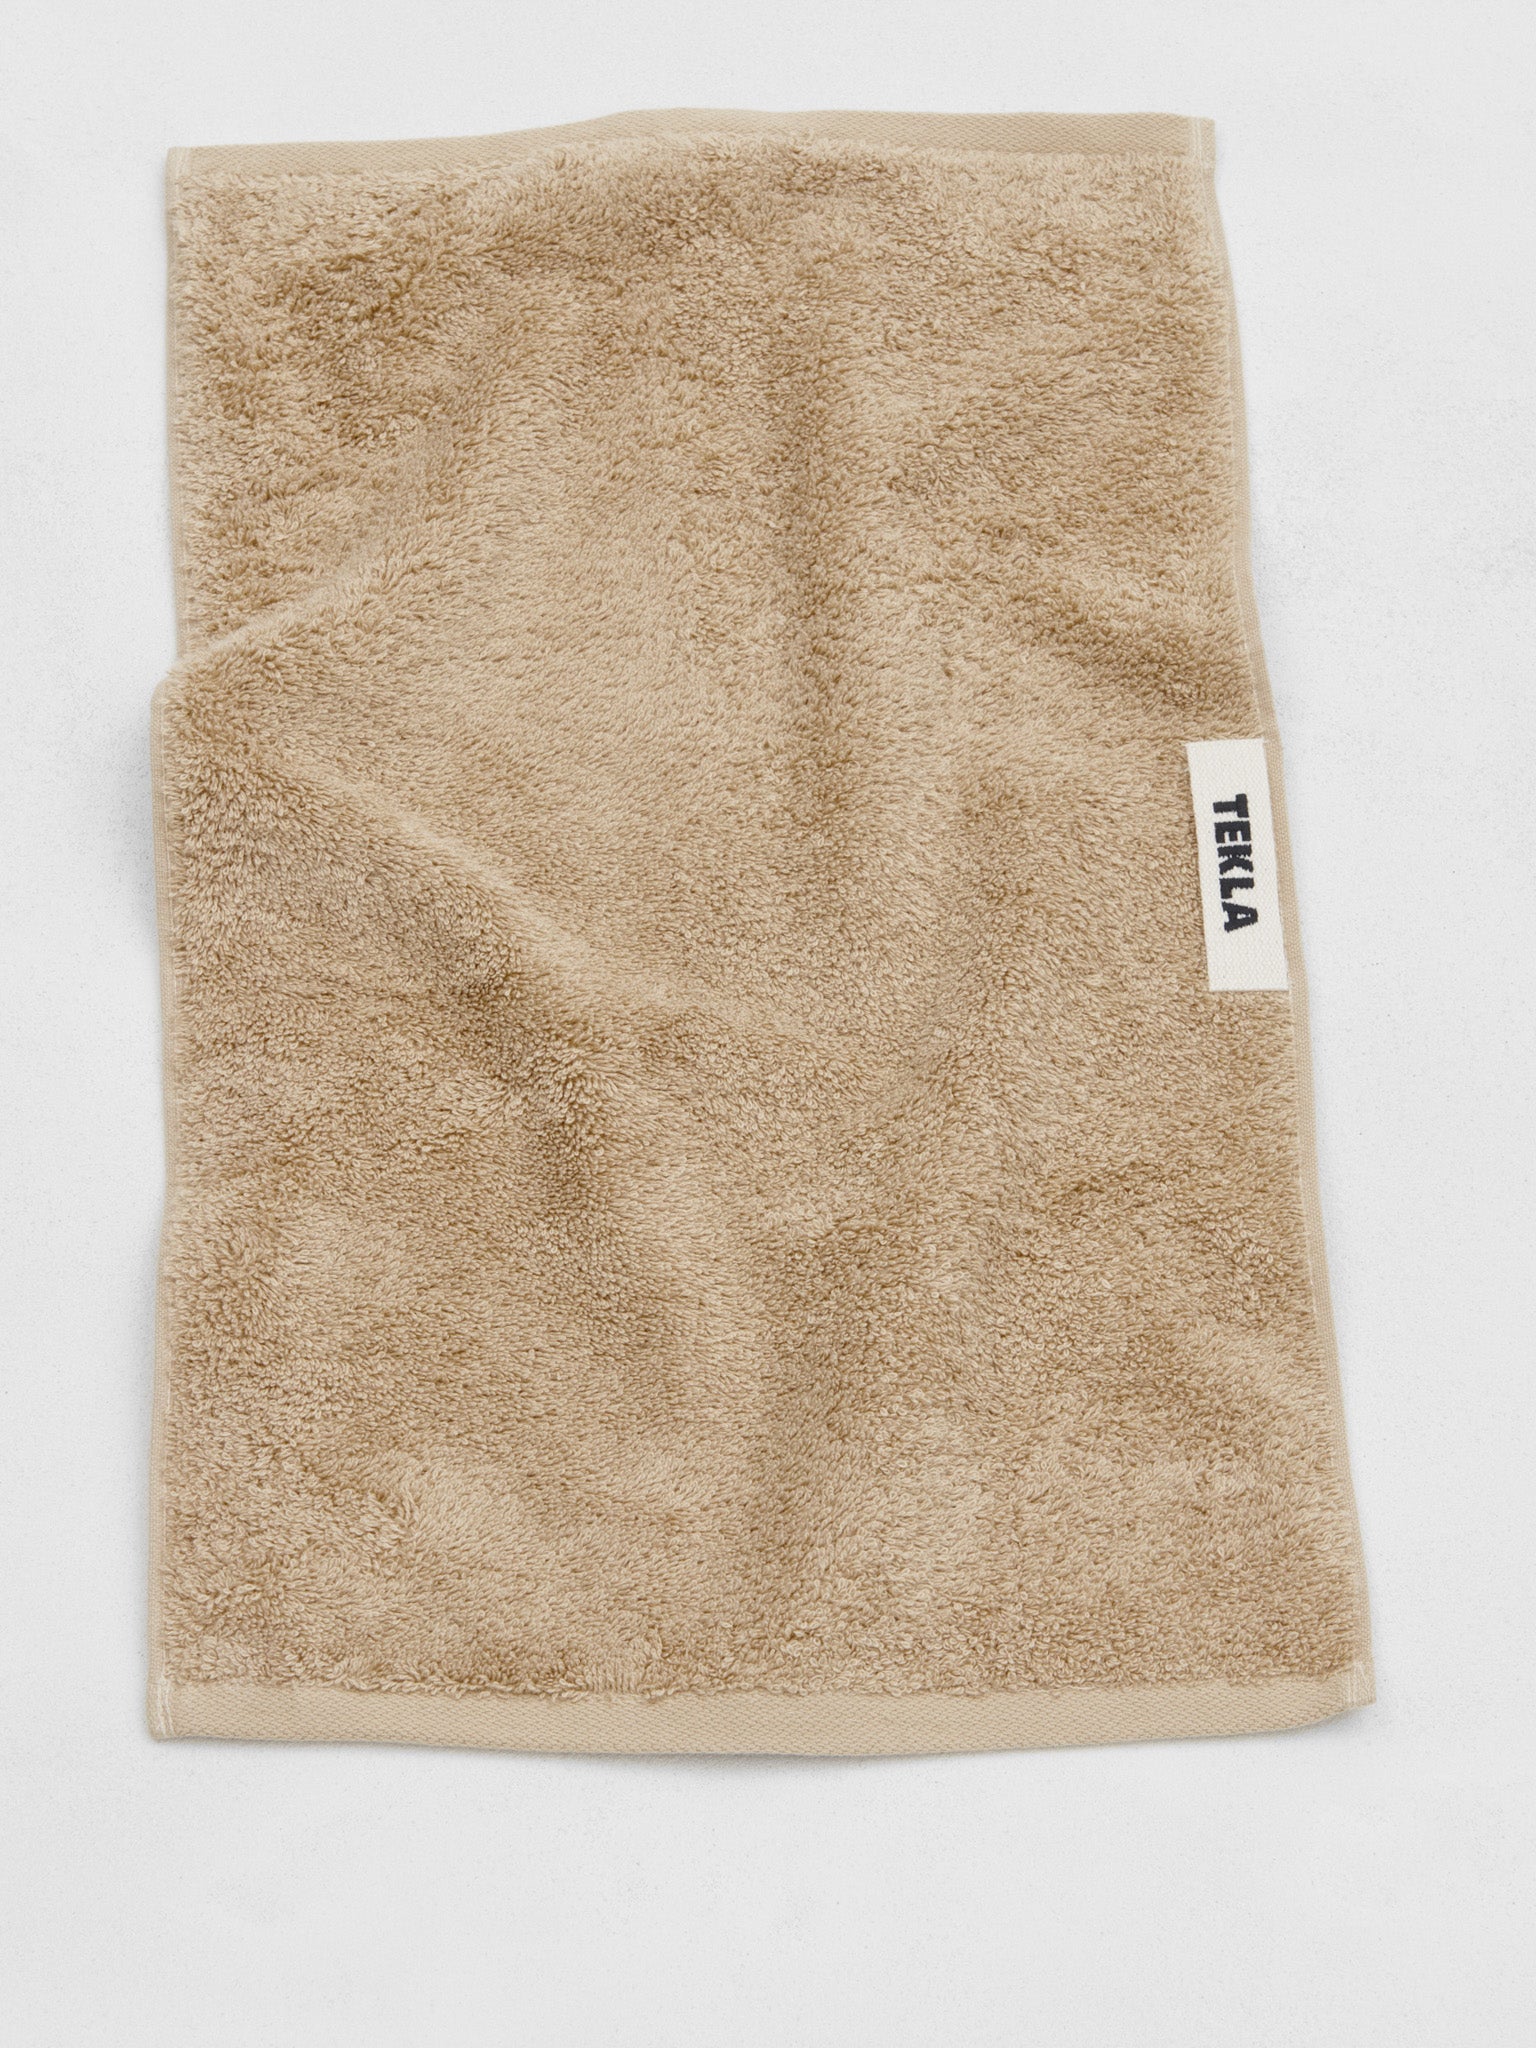 Guest Towel in Sienna